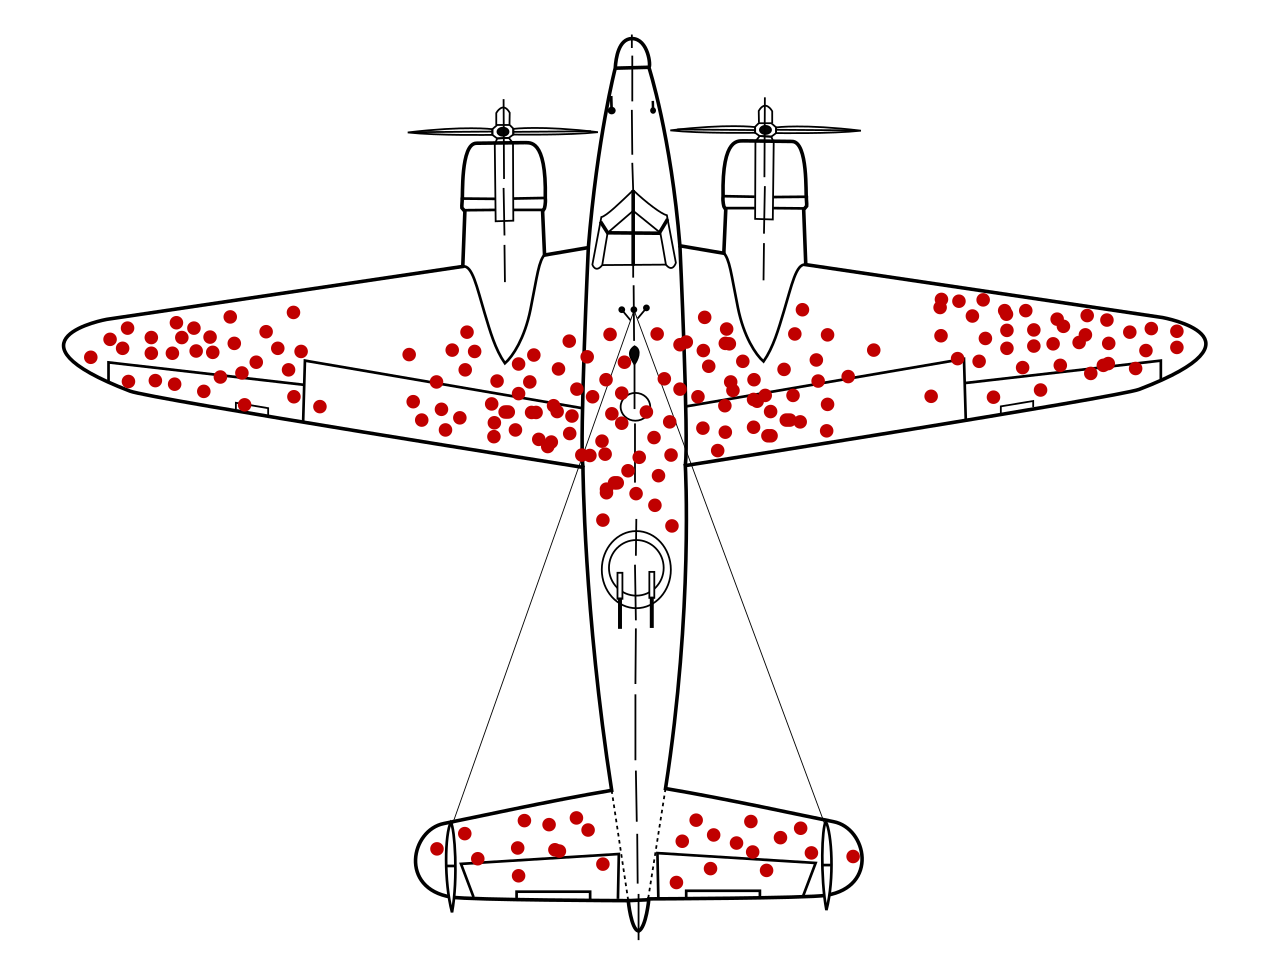 O desenho rudimentar de um avião bombardeiro bimotor com metralhadoras no centro, provavelmente um NA B25 Mitchell. Vários pontos vermelhos representando tiros. Muitos nas pontas da asa, muitos no corpo do avião próximos às asas. Muitos na cauda do avião.